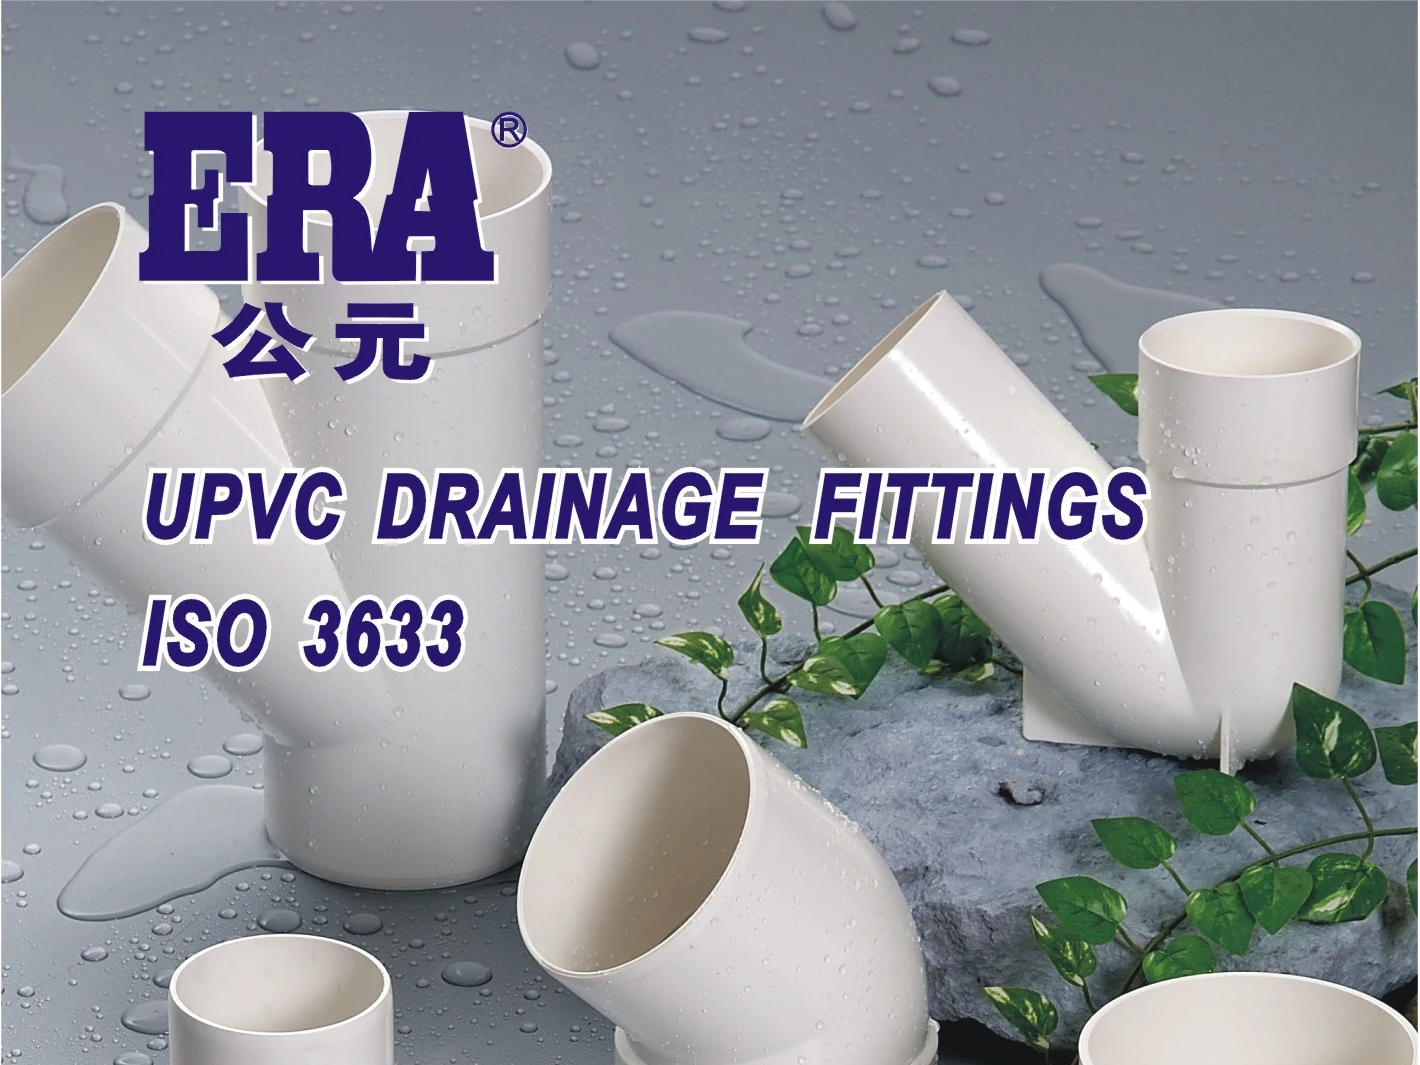 Les détails d'installation du tuyau de drainage en PVC-U sont présentés en quatre points